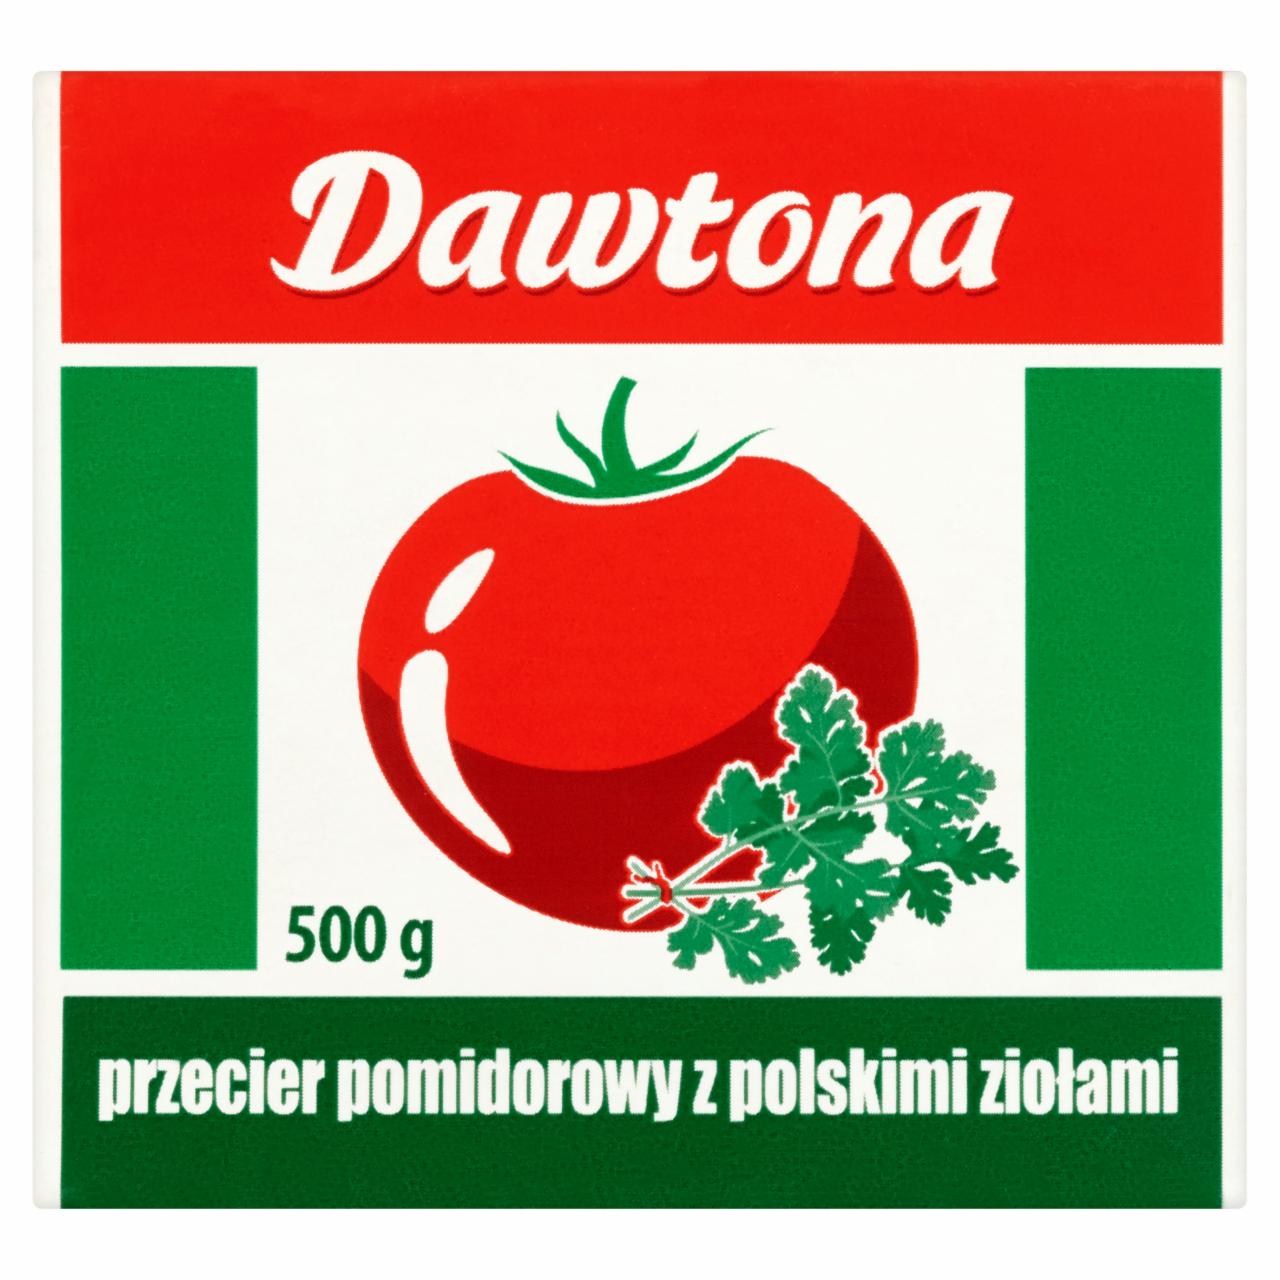 Photo - Dawtona Tomato Puree with Polish Herbs 500 g